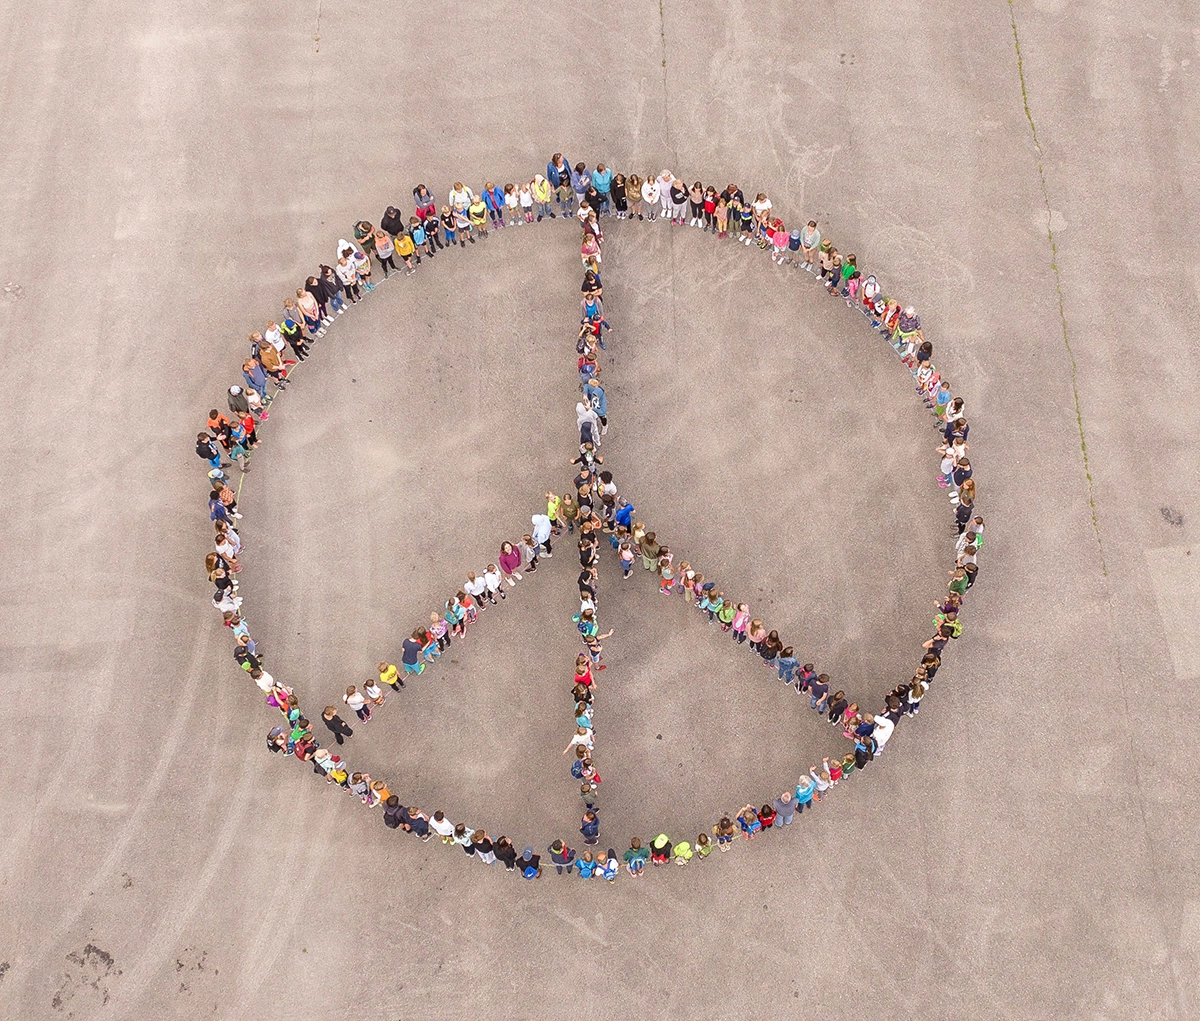 Menschen bilden ein Peace-Zeichen